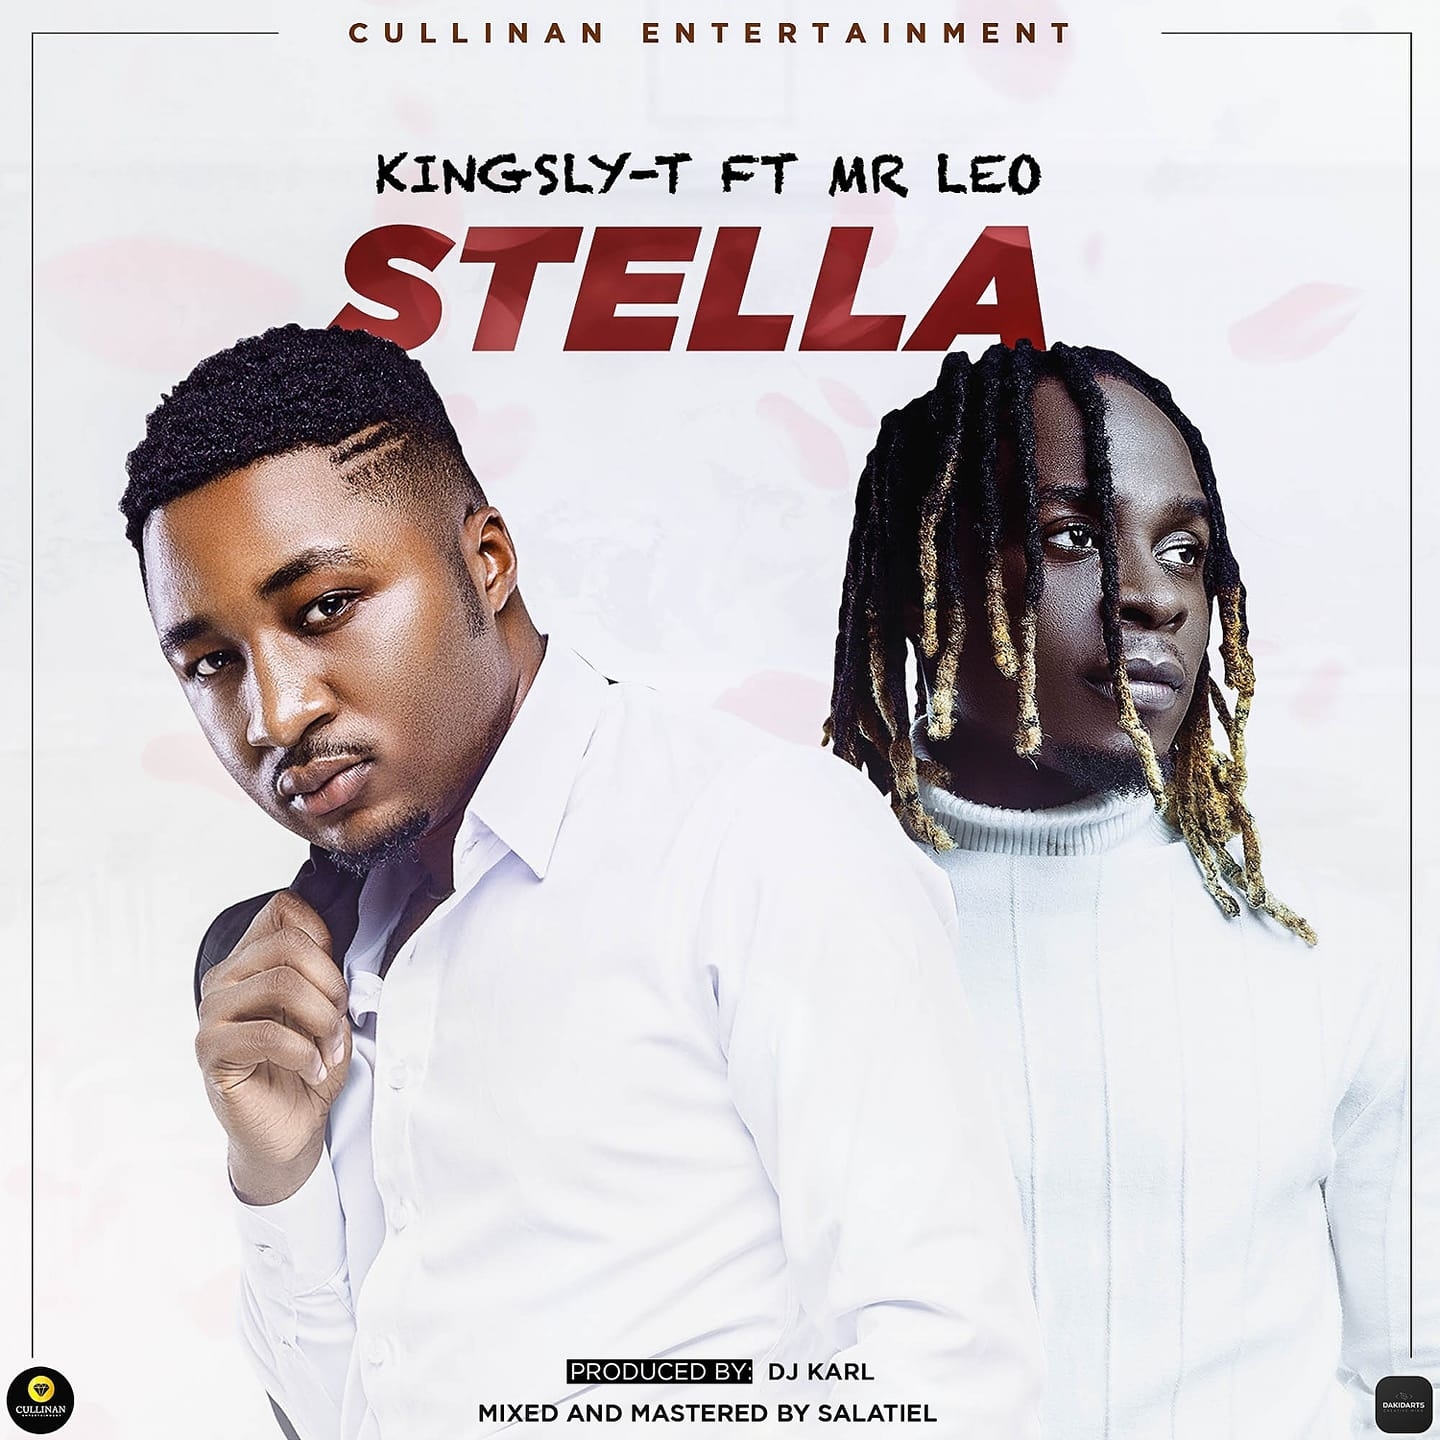 Kingsly-T x Mr Leo - "Stella"